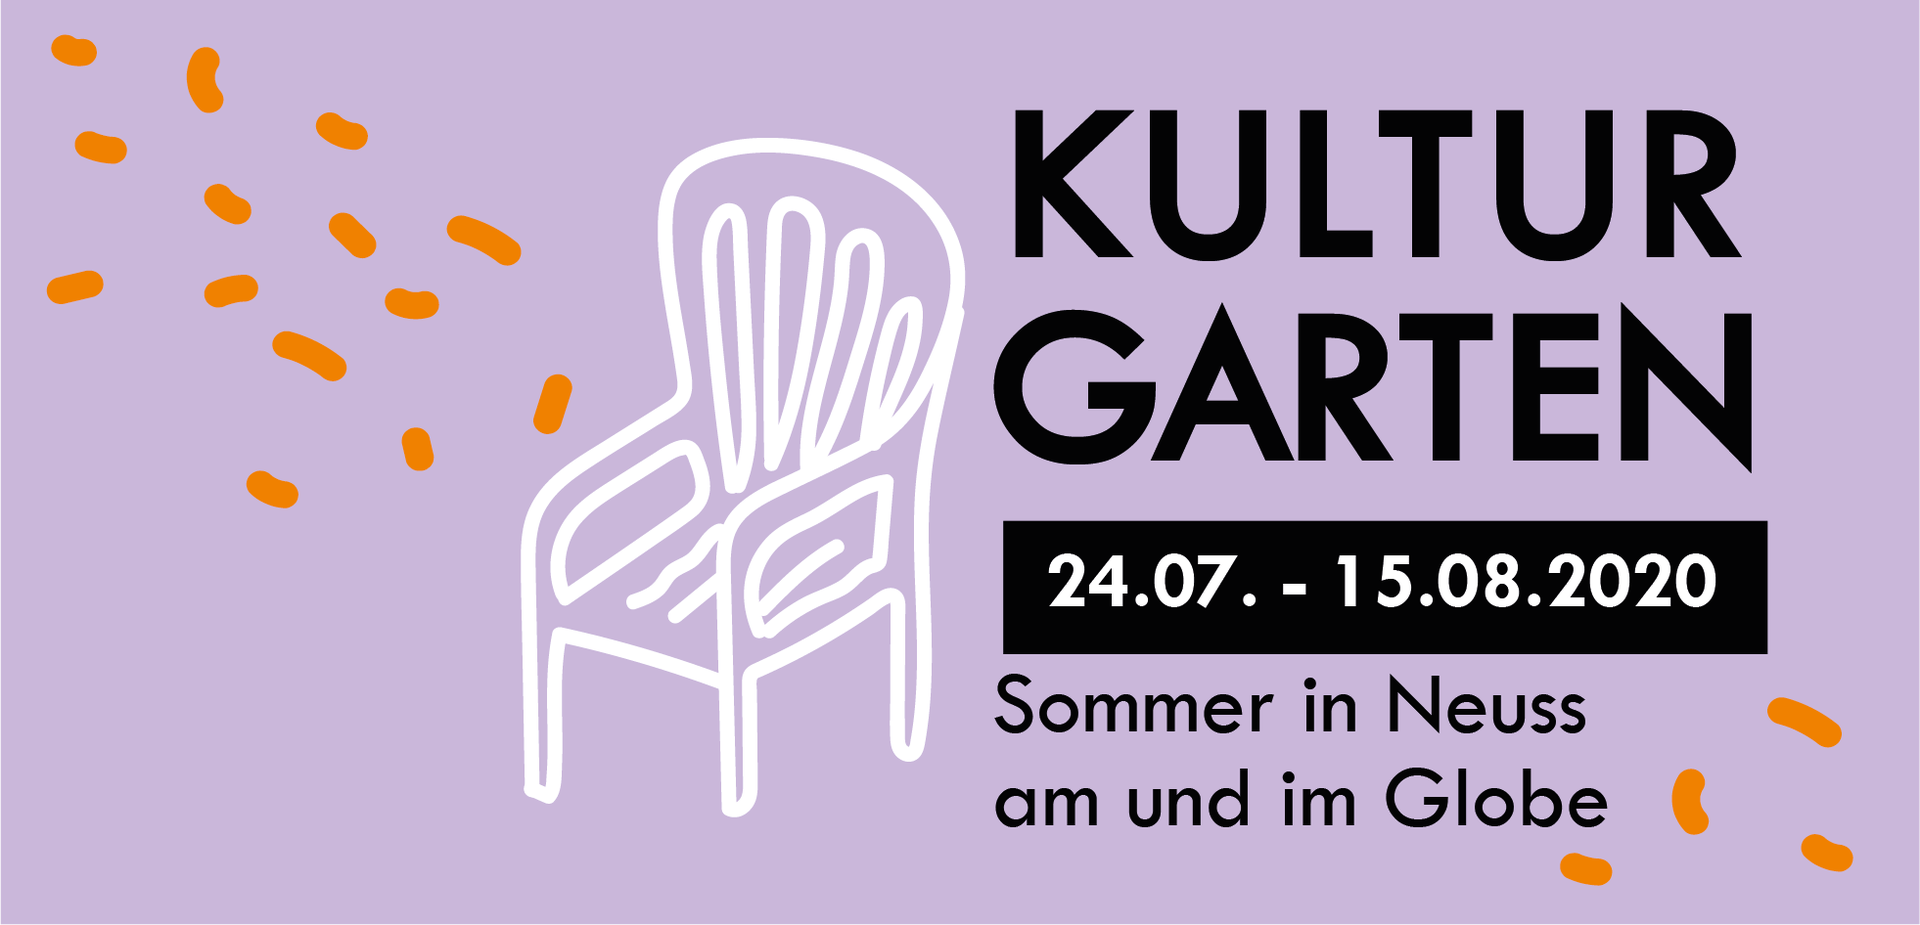 1407 Kulturgarten – Sommer in Neuss am und im Globe 01 - Logo.jpg